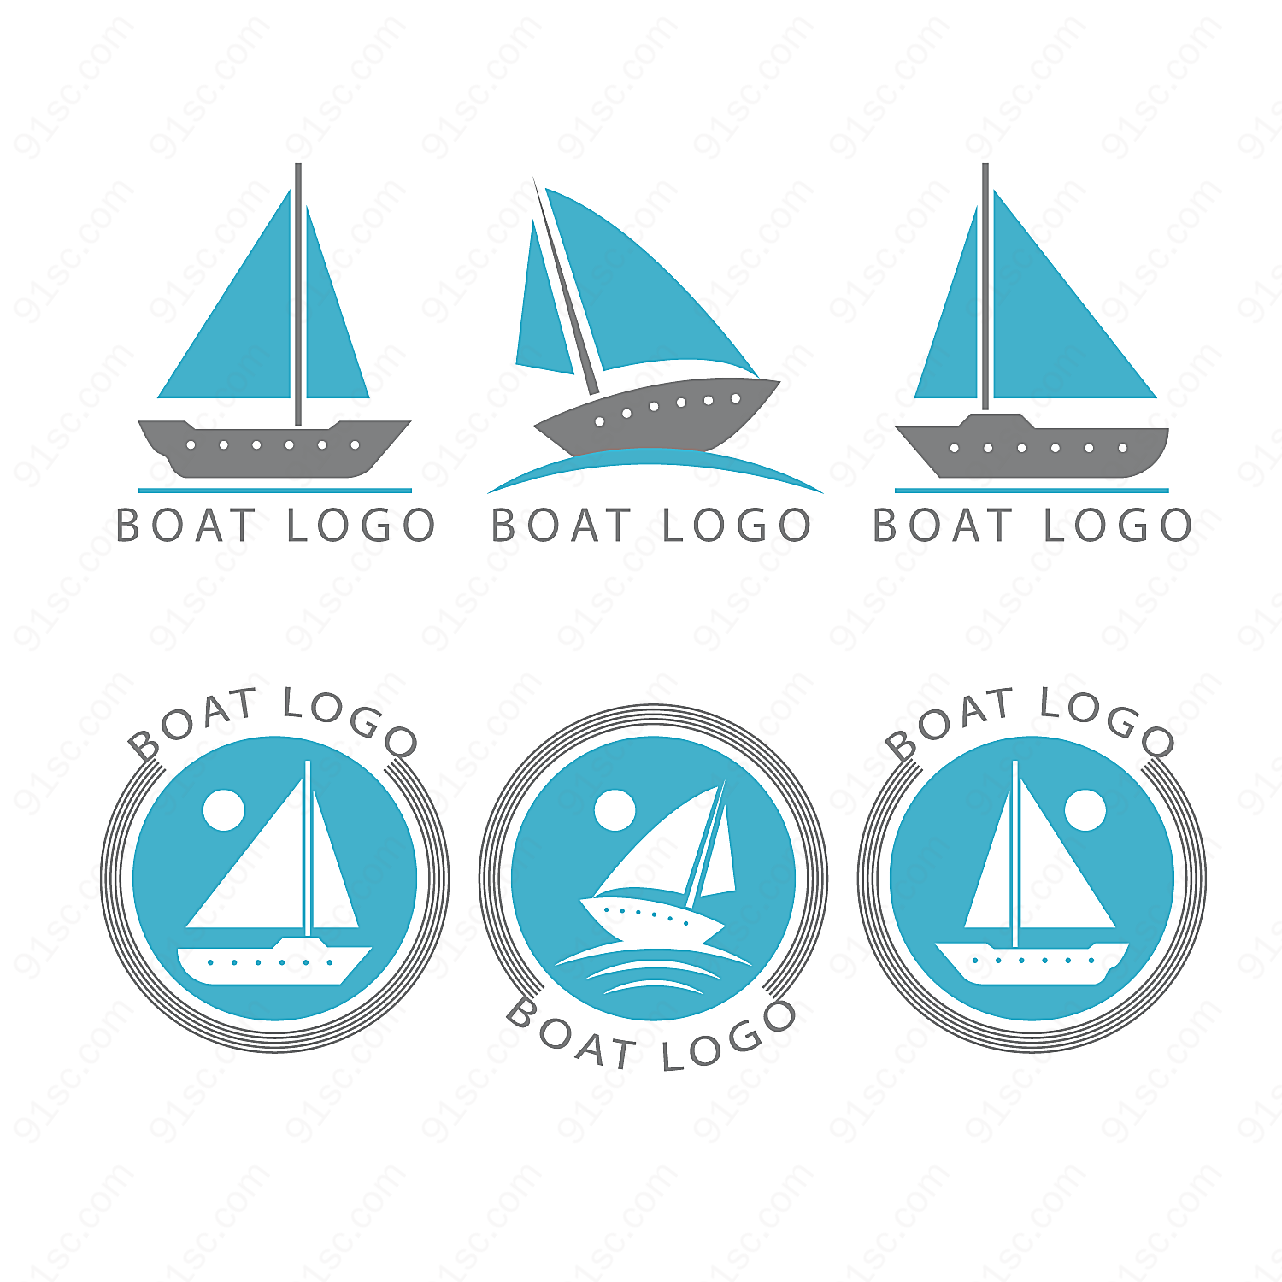 创意船舶标志矢量logo图形